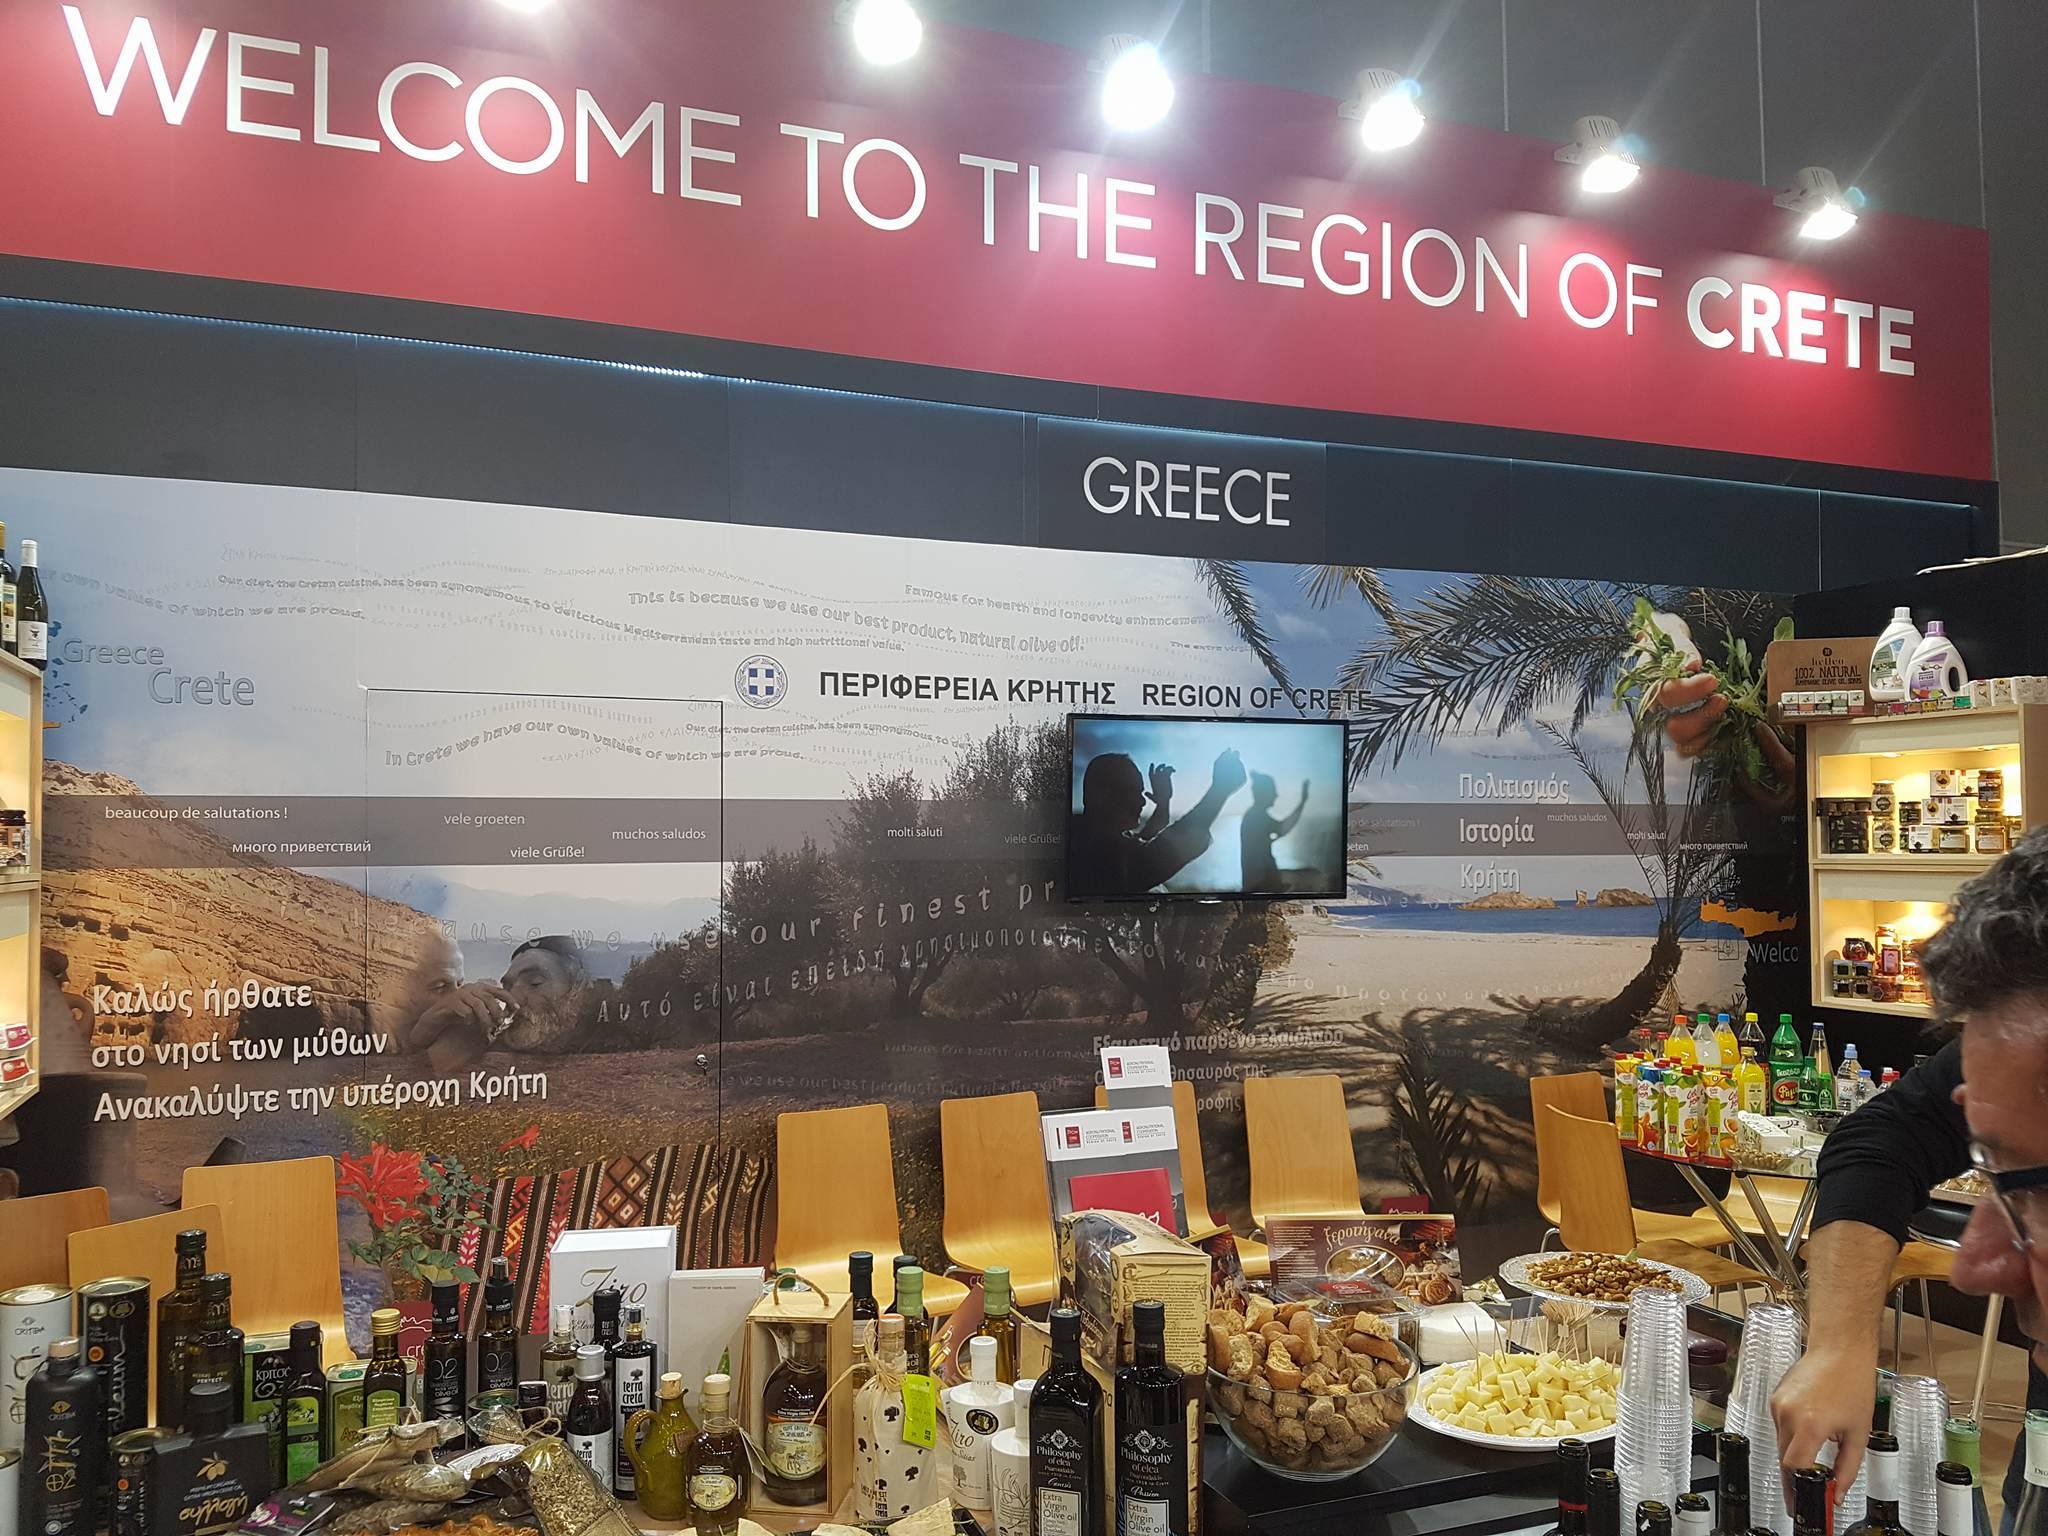 Σε έκθεση τροφίμων και ποτών στο Παρίσι η Περιφέρεια Κρήτης